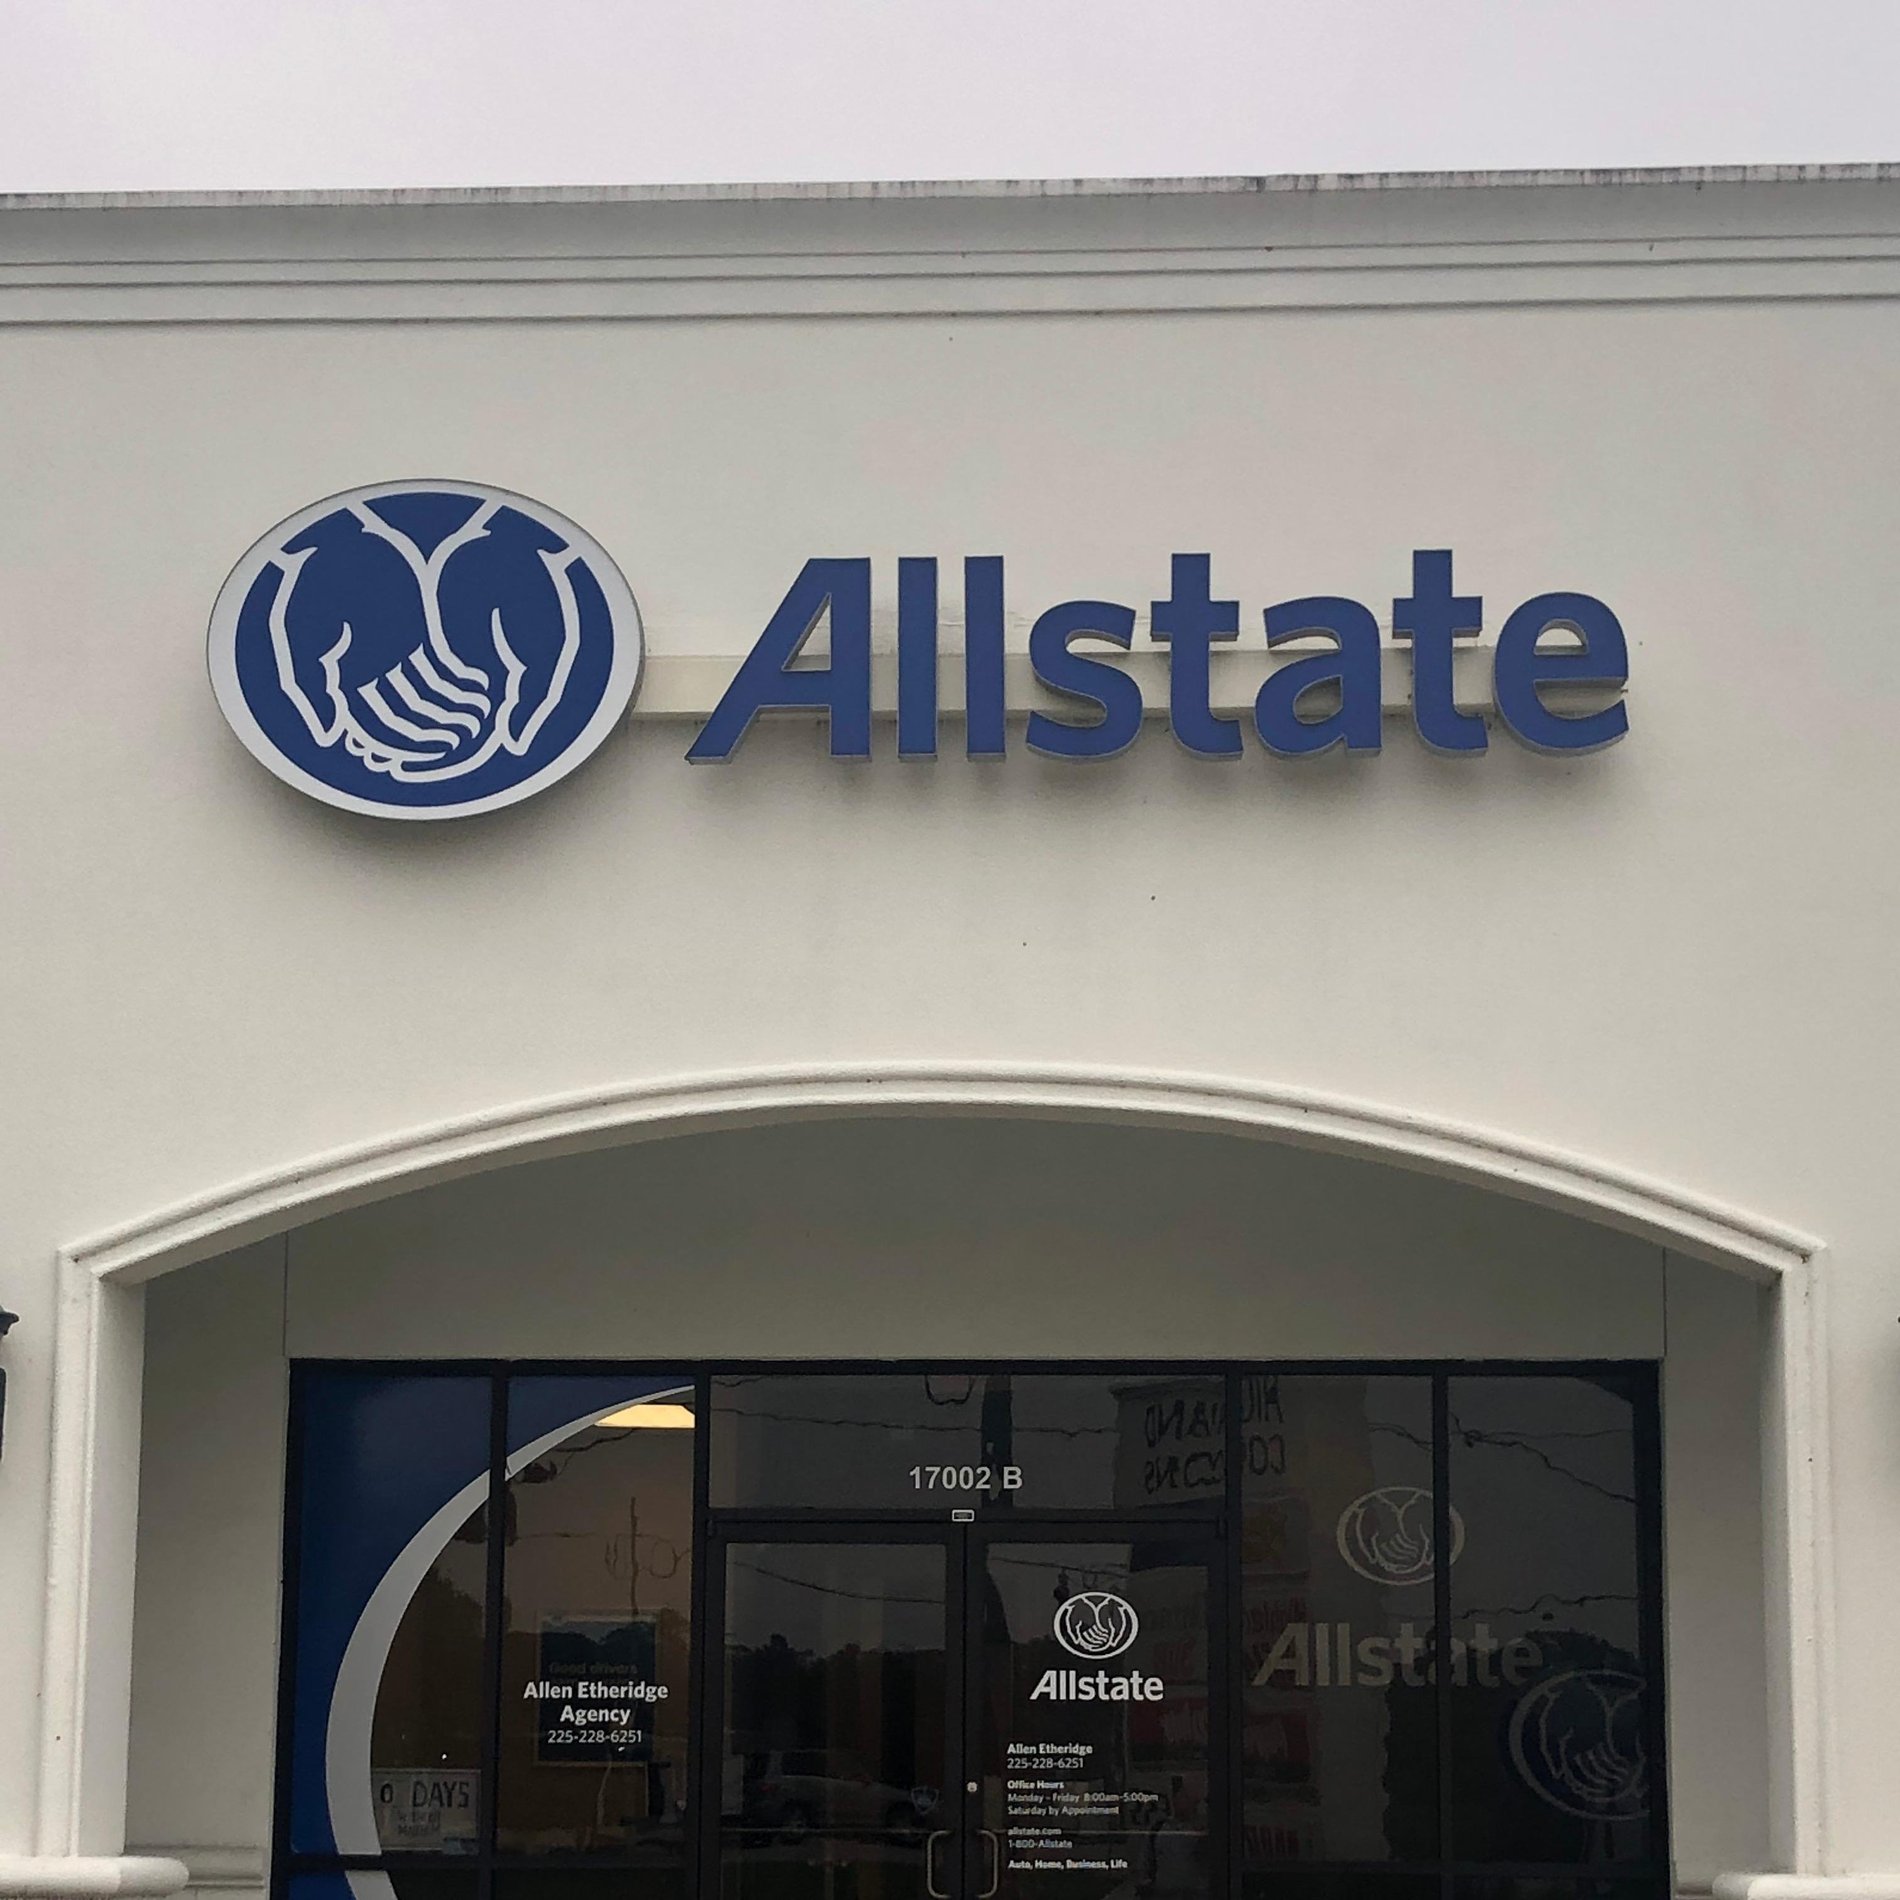 Allen Etheridge - Allstate Insurance Agent In Baton Rouge, La